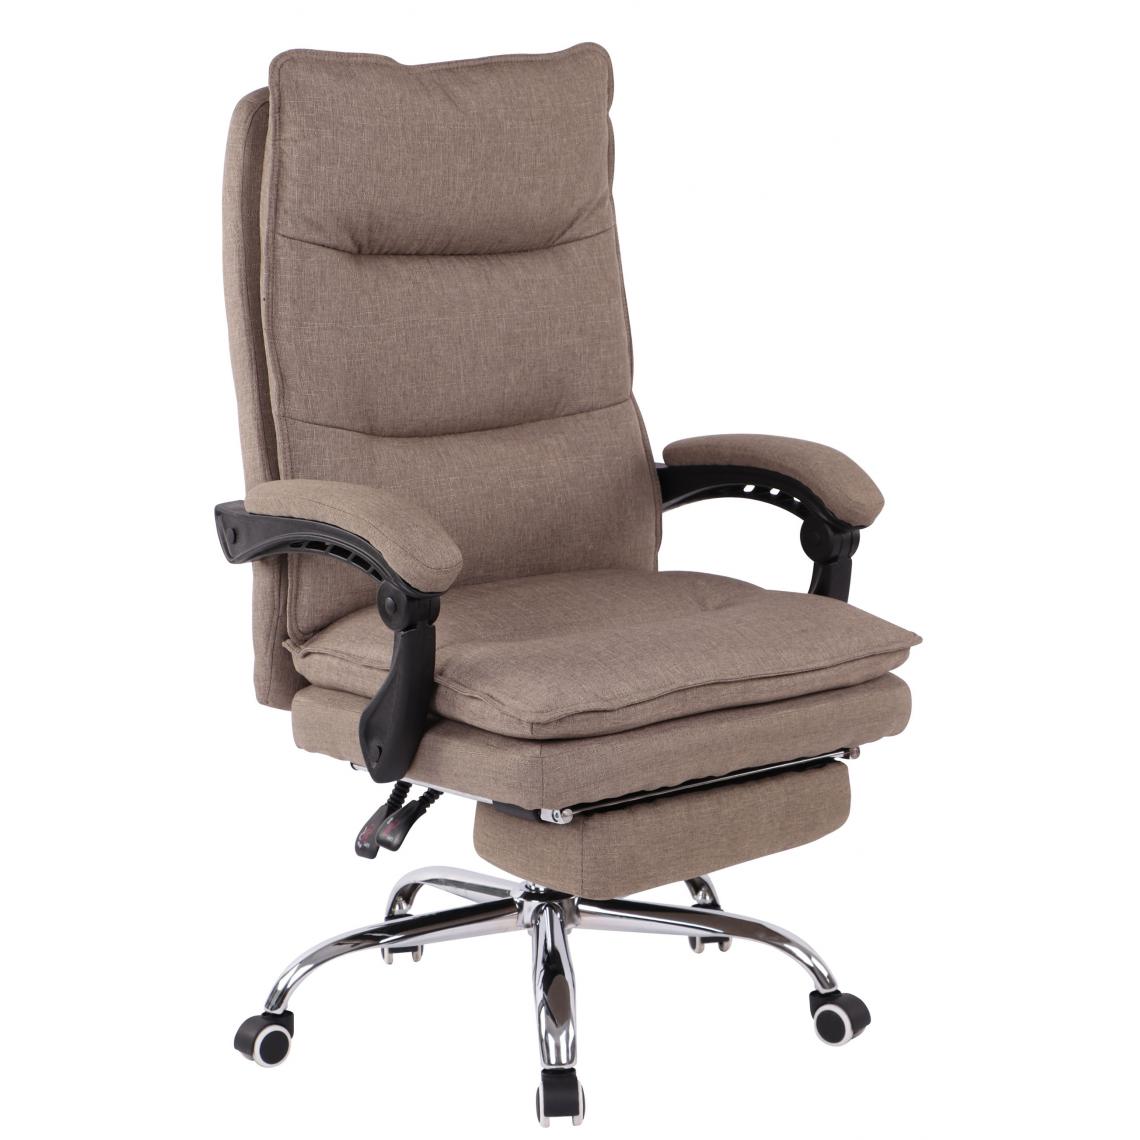 Icaverne - Esthetique Chaise de bureau categorie Georgetown Fabric couleur taupe - Chaises